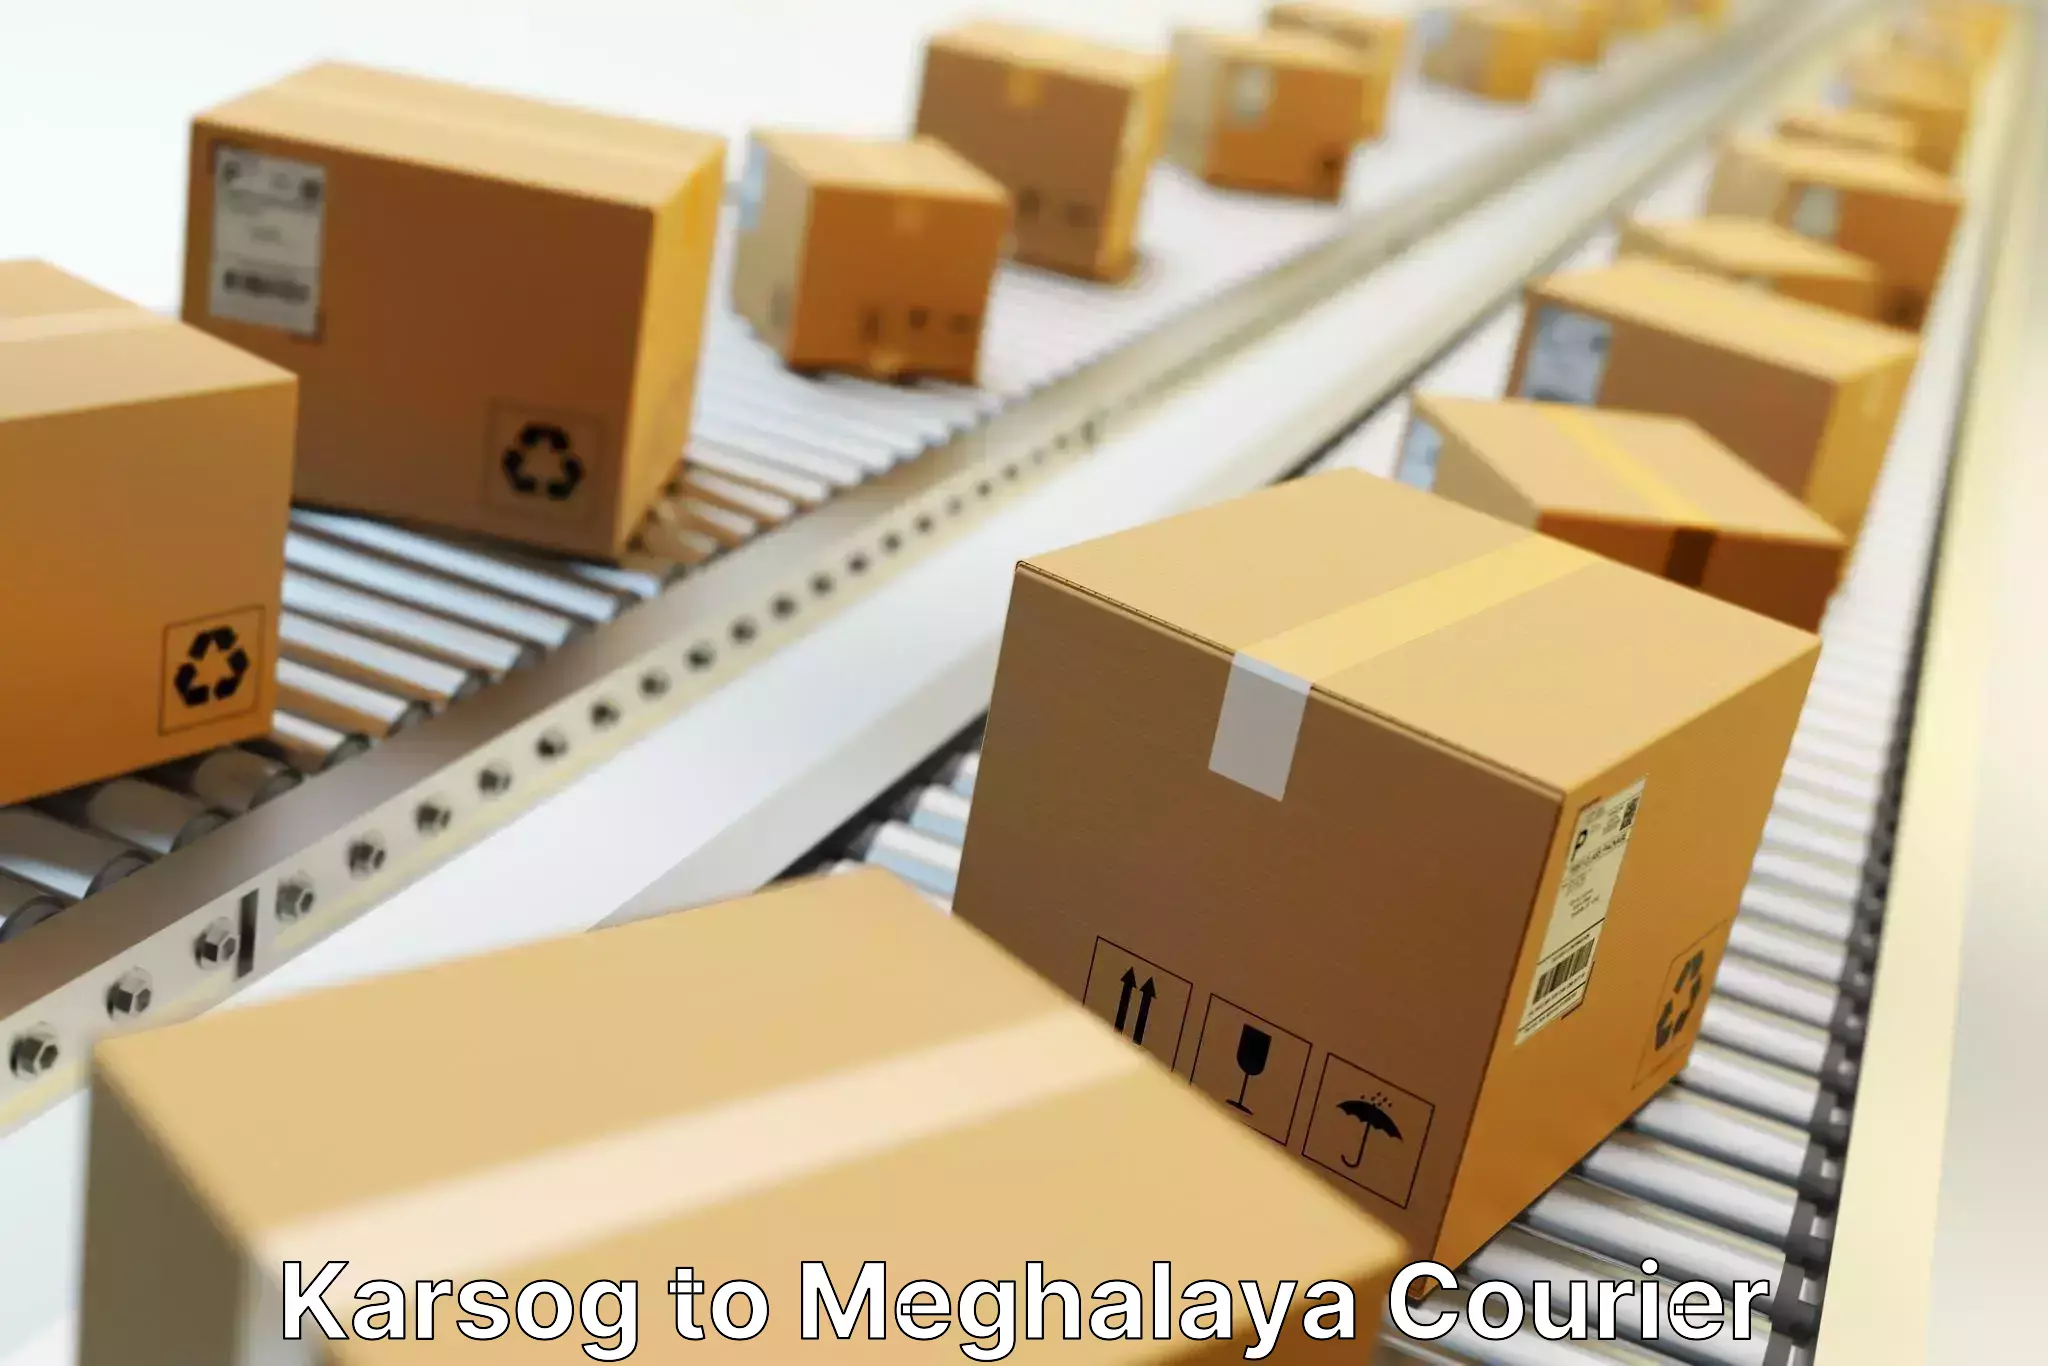 Nationwide parcel services Karsog to Meghalaya